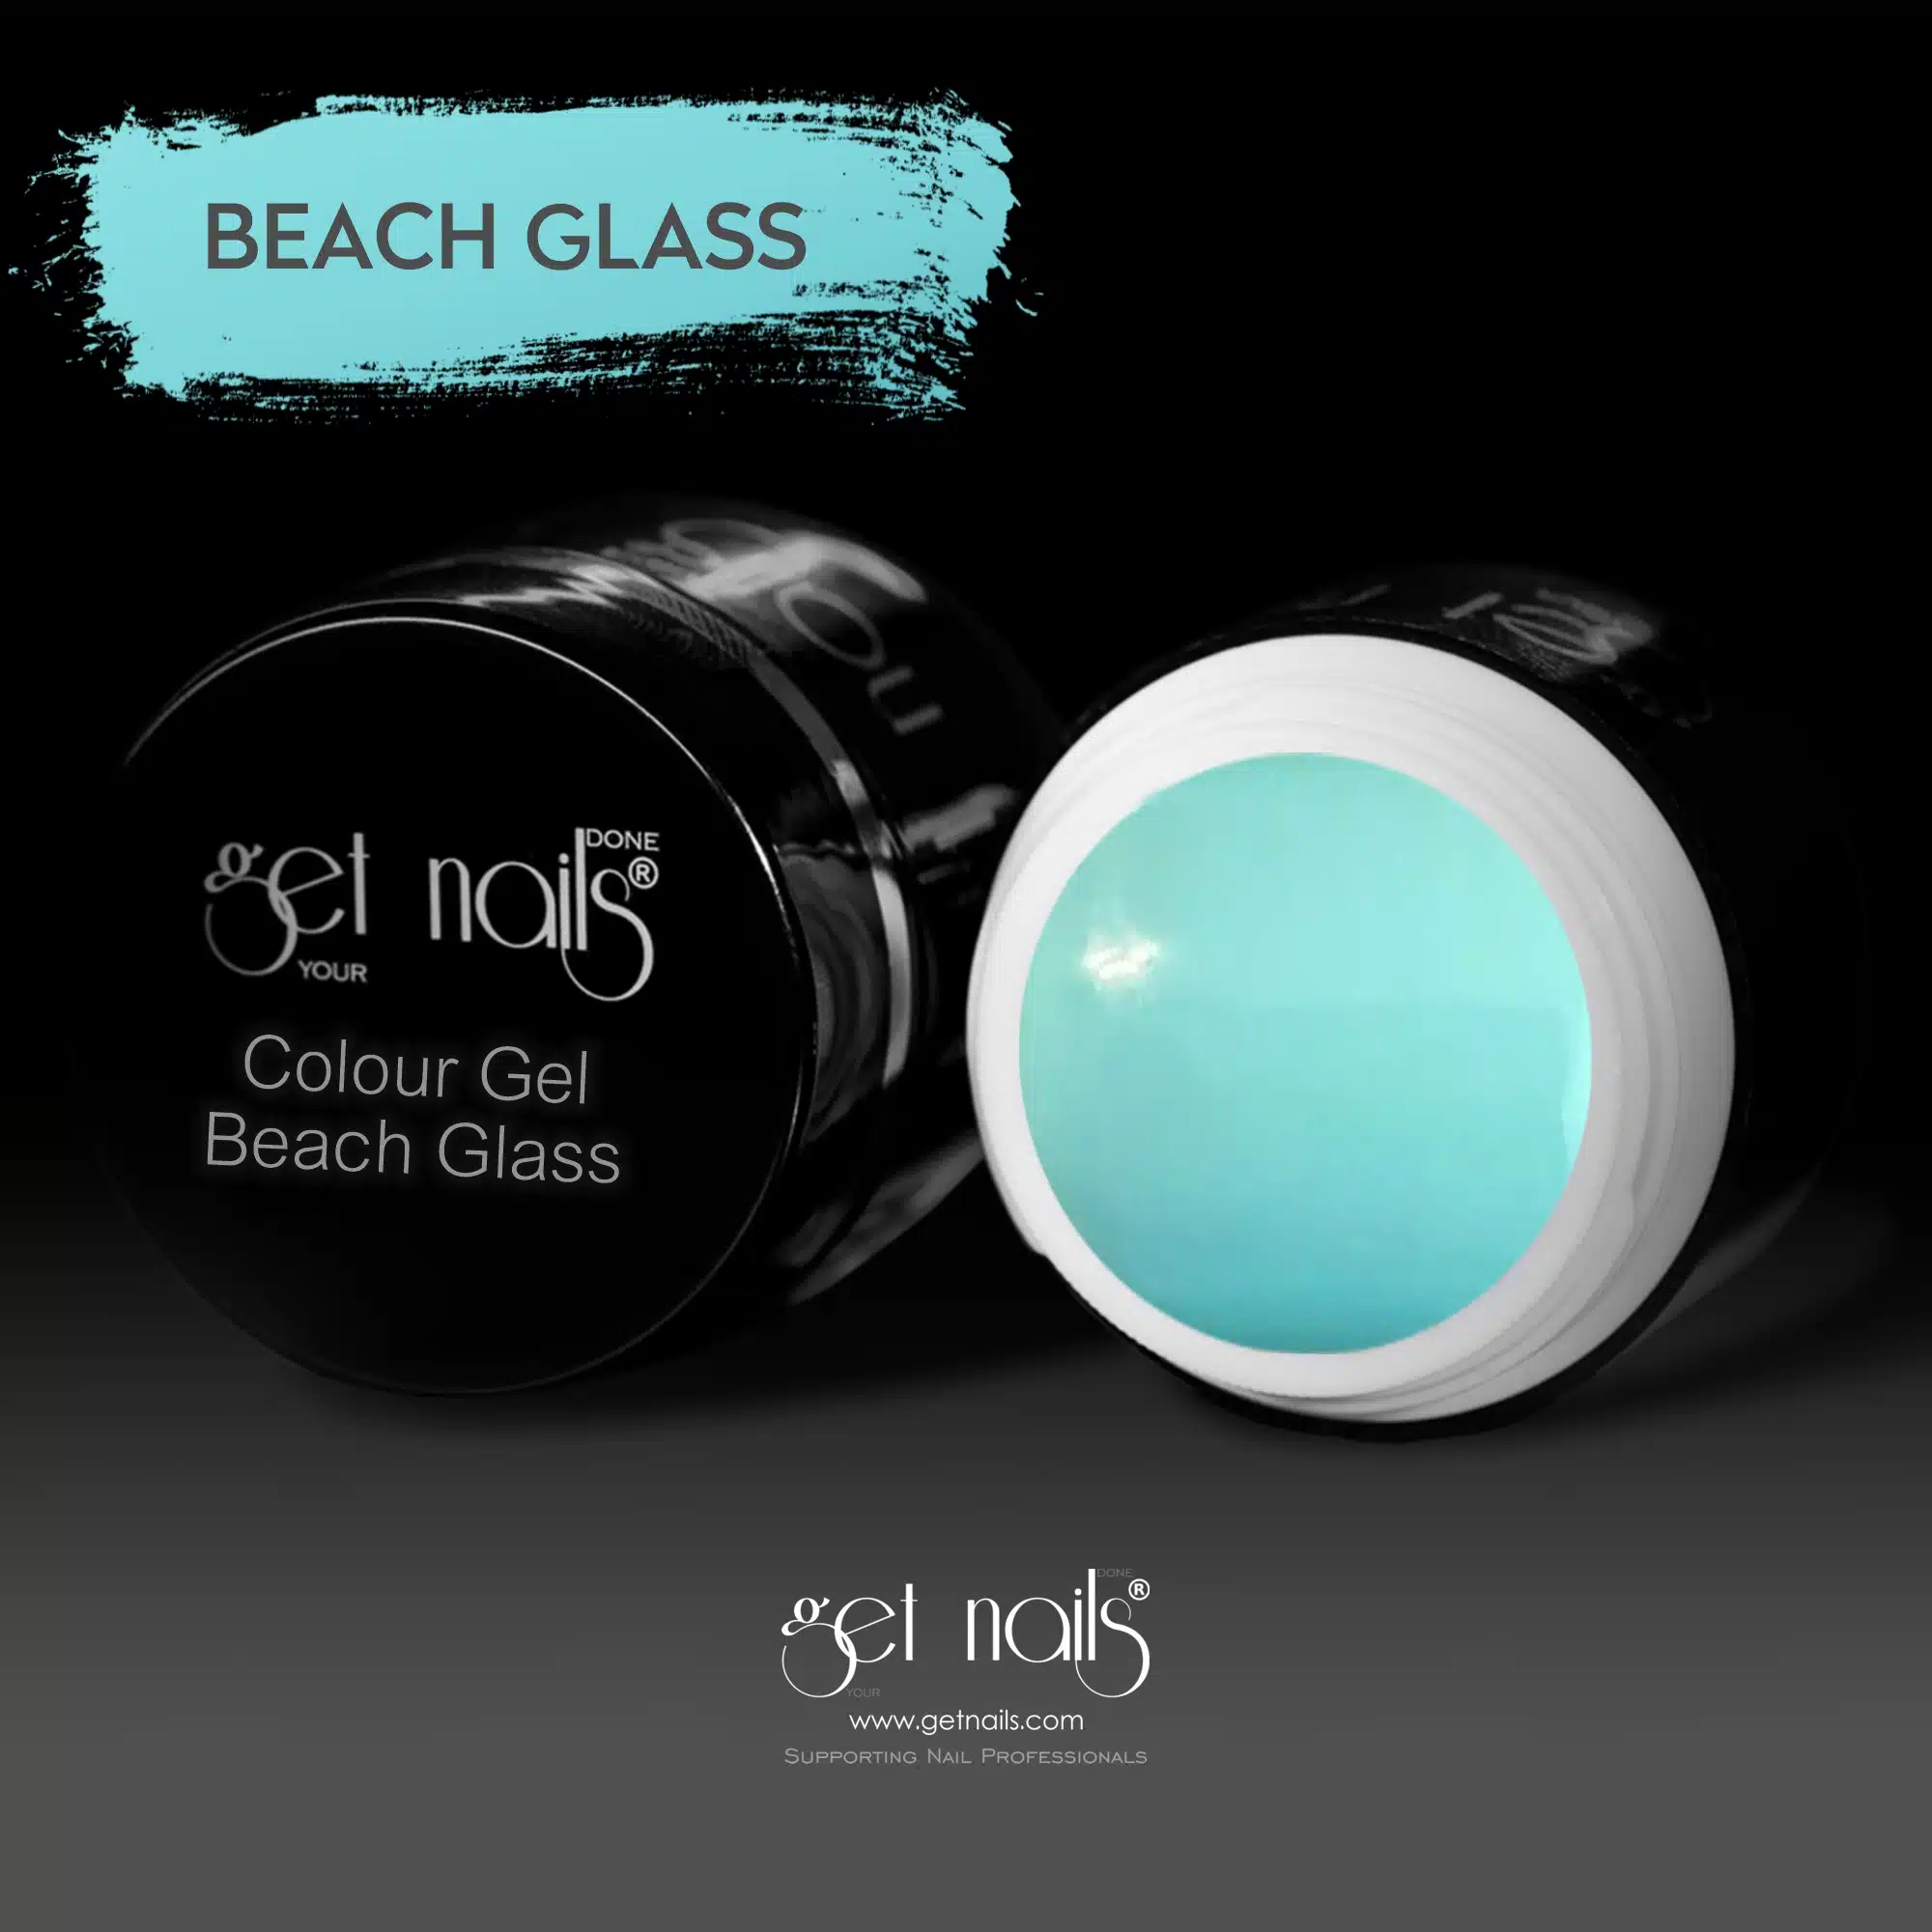 Get Nails Austria - Colour Gel Beach Glass 5g